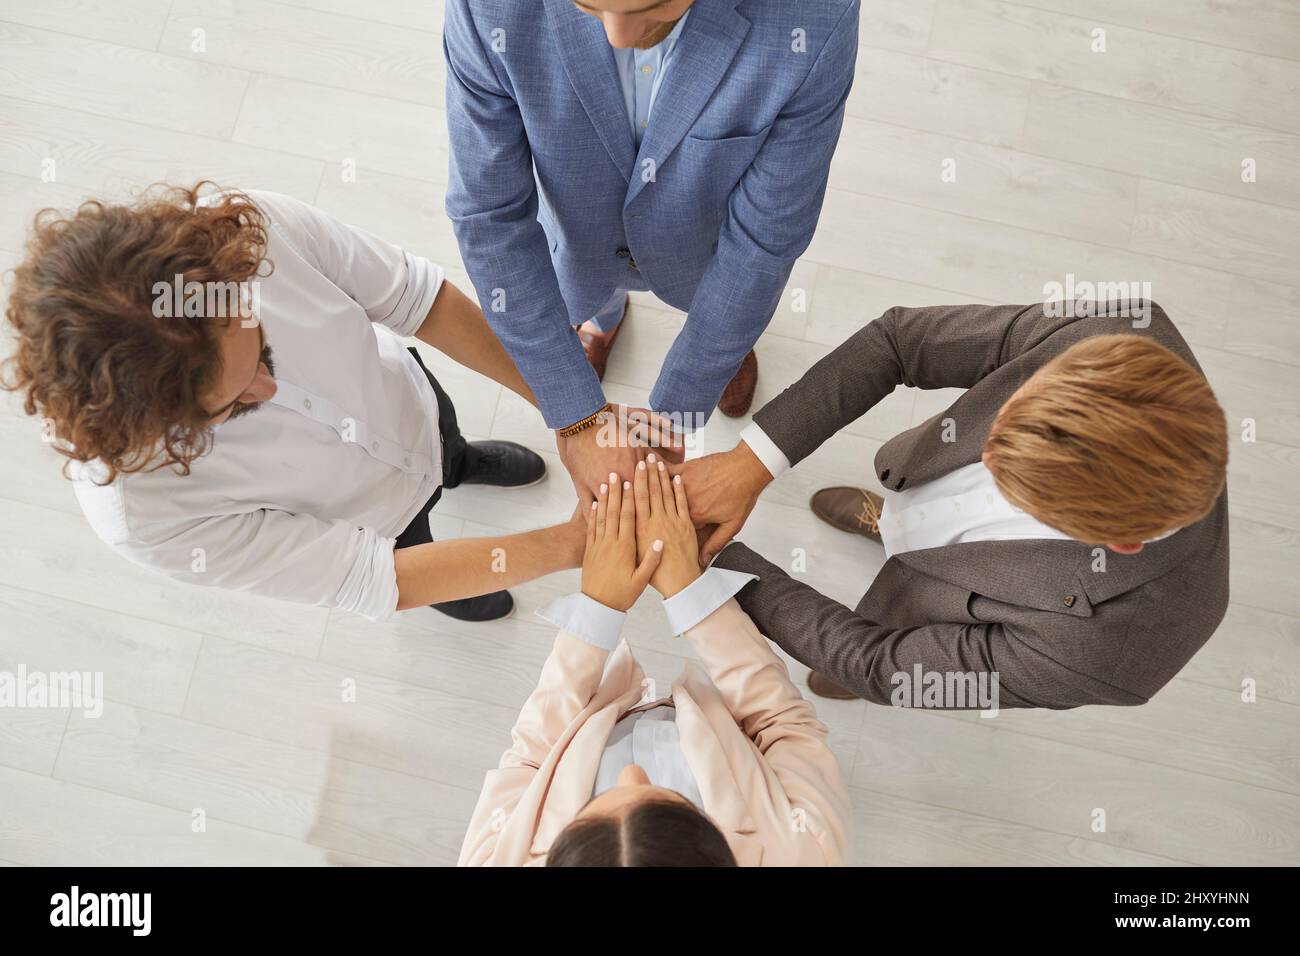 Draufsicht auf eine Gruppe von Geschäftsleuten, die zusammenstehen und sich zusammenschließen Stockfoto